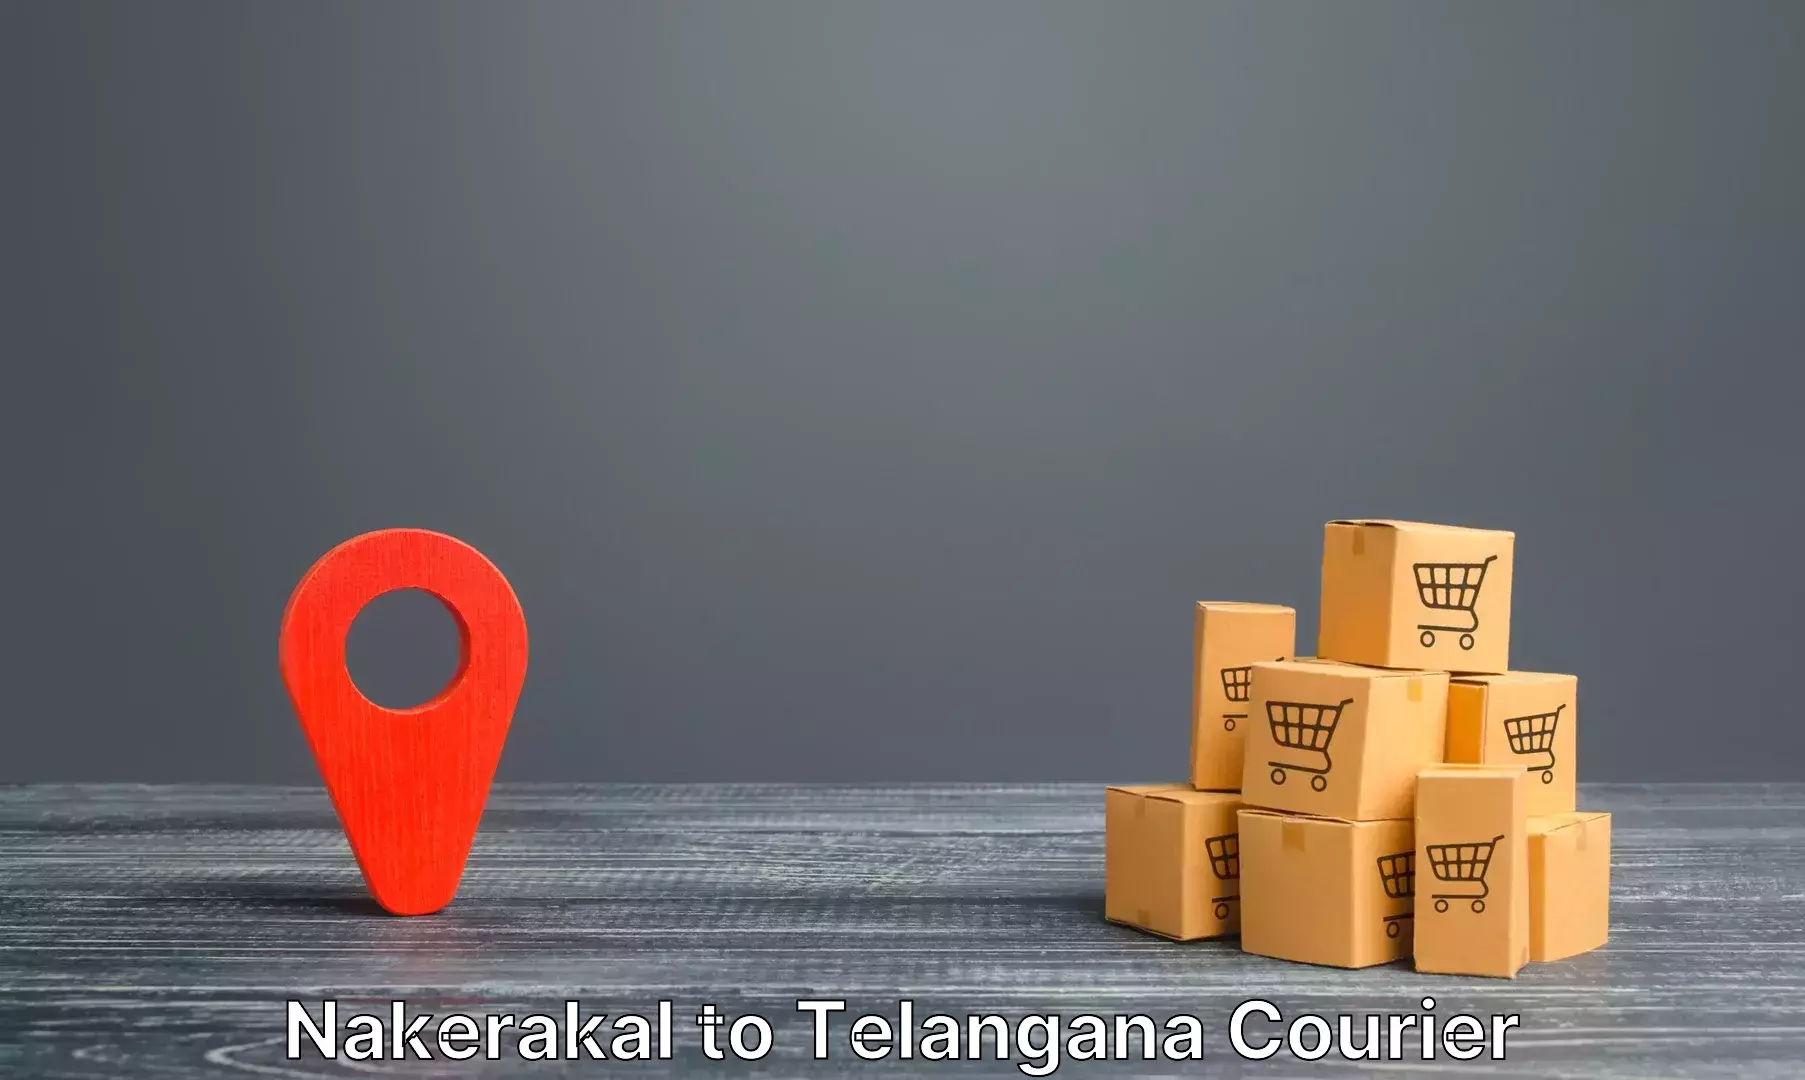 Urgent luggage shipment Nakerakal to Kalwakurthy